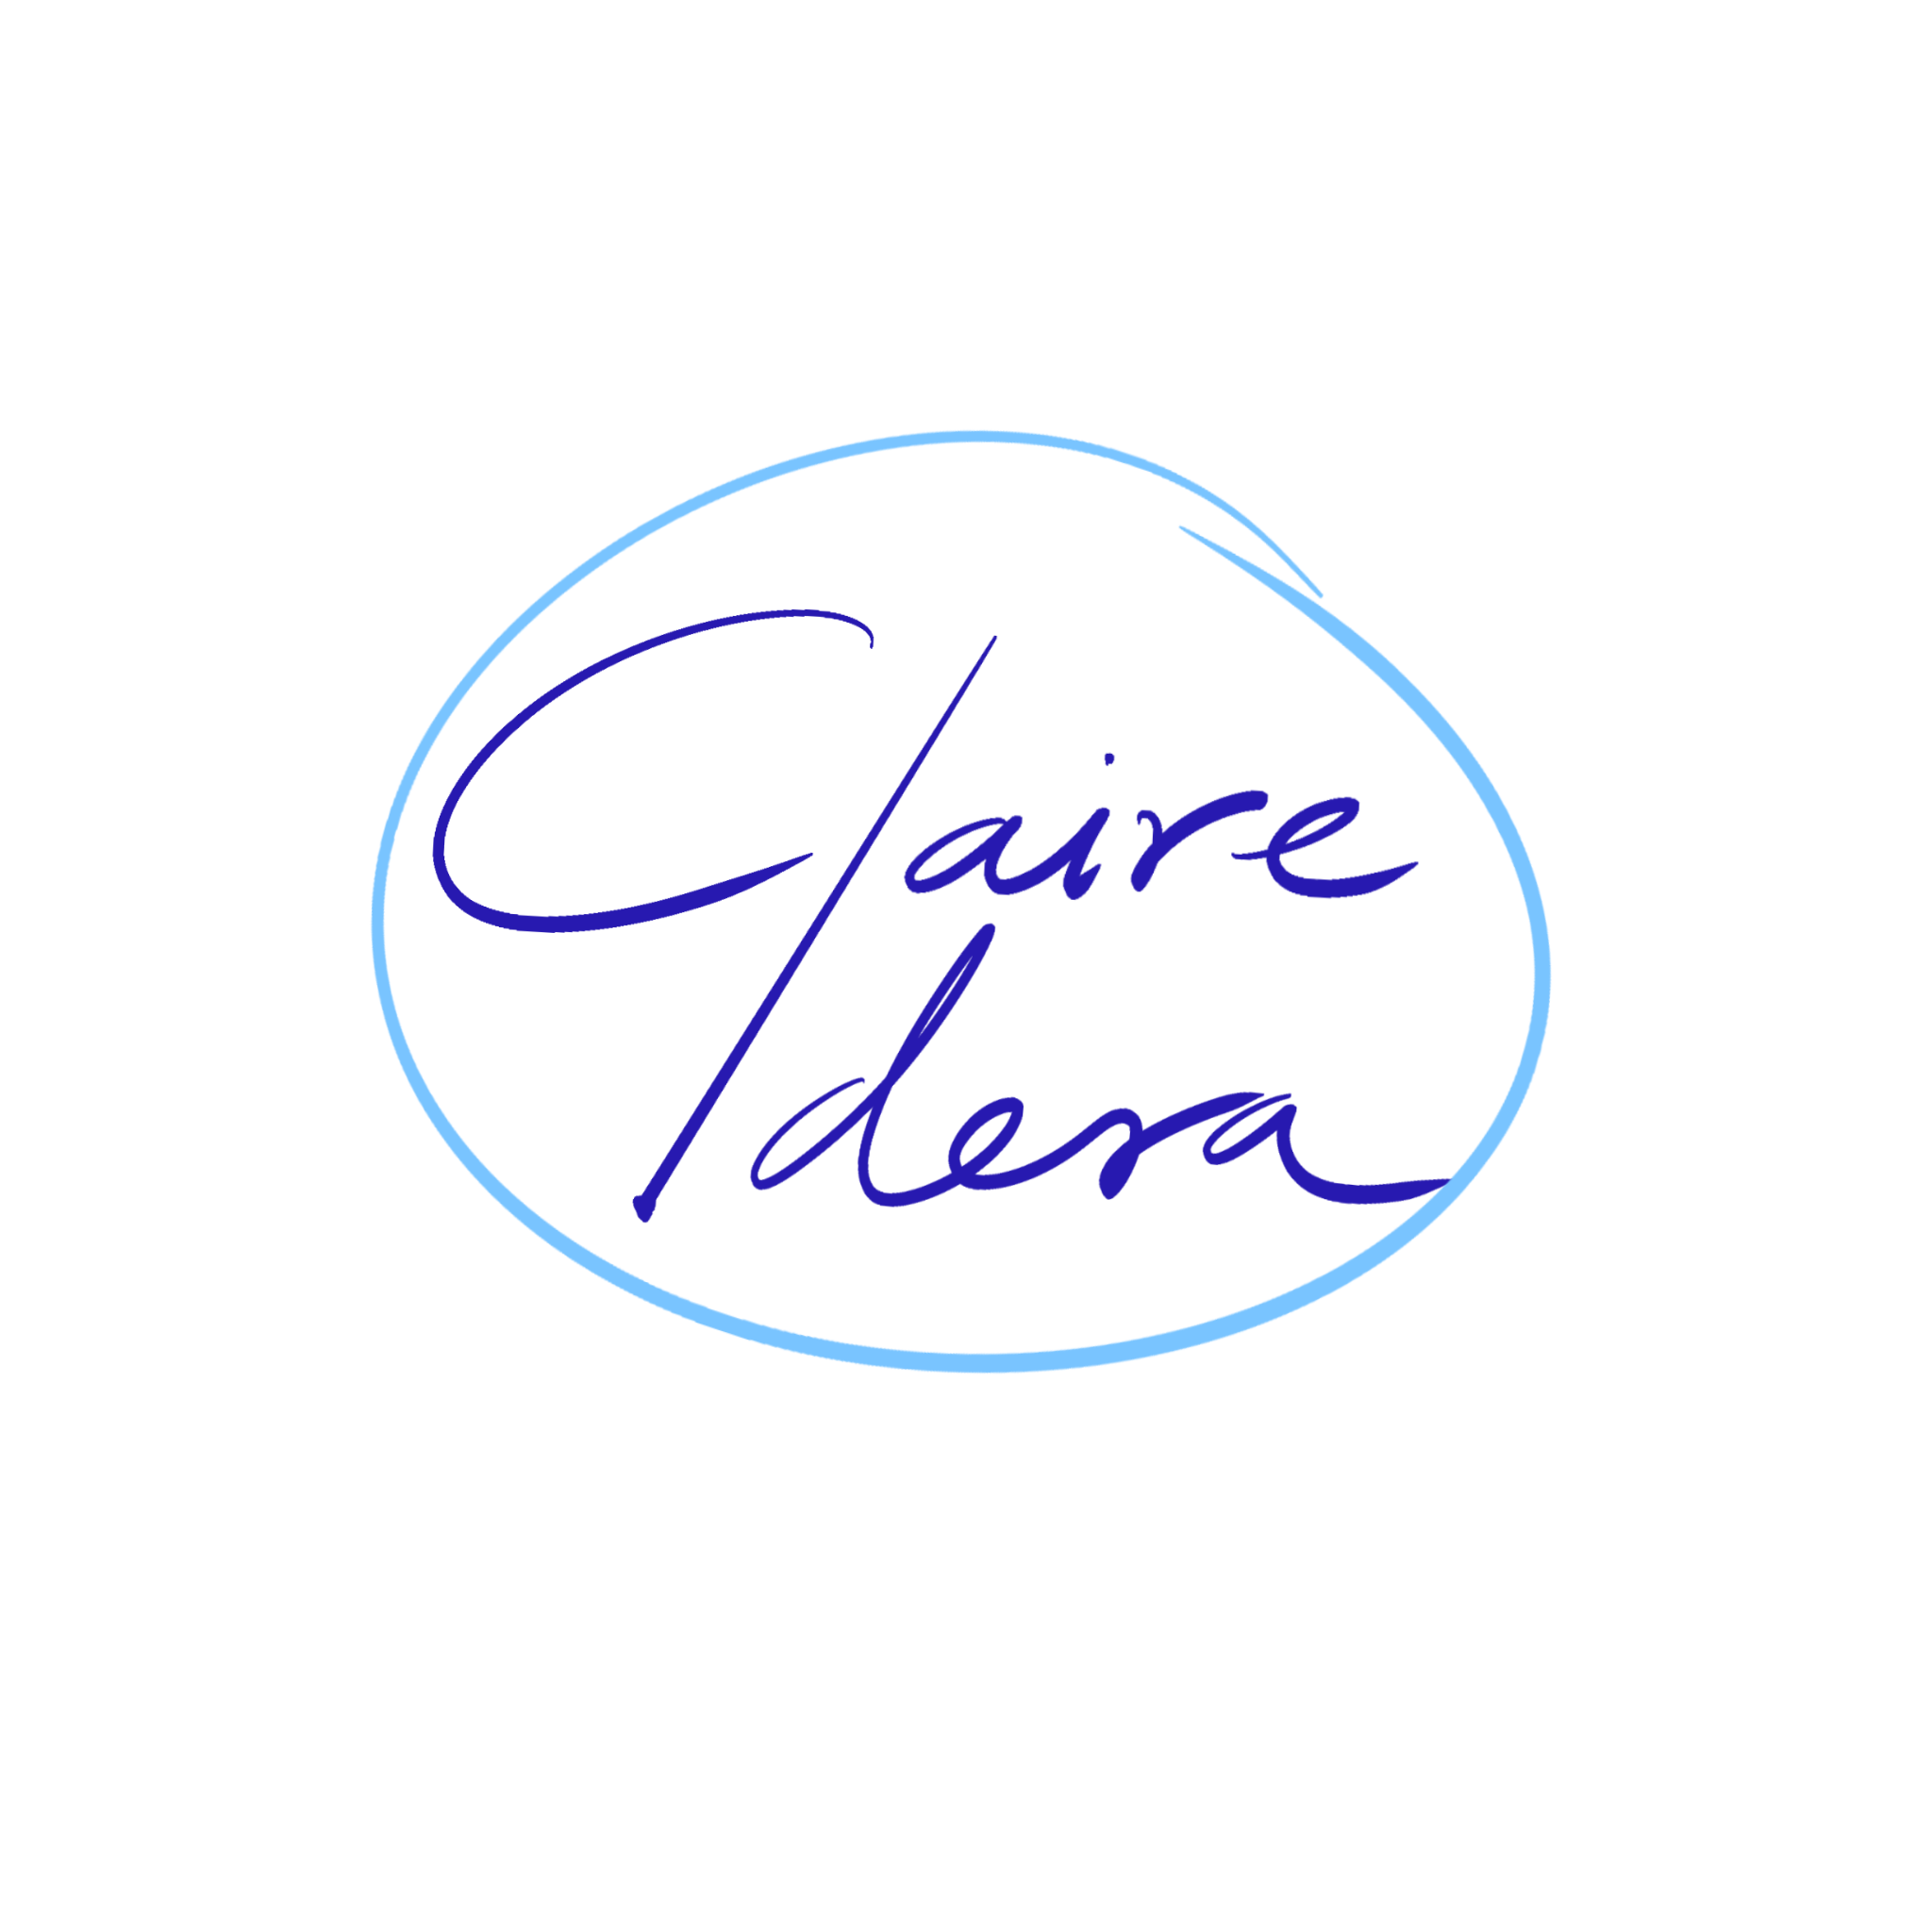 Claire Idera